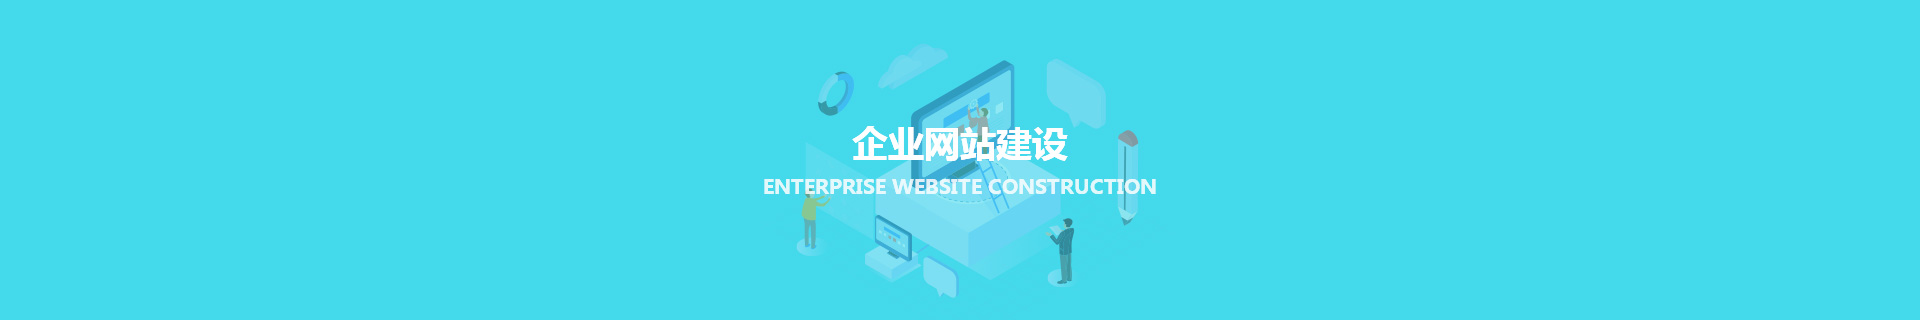 企业网站建设_网站建设_天津网站建设制作与开发_匠人匠心科技